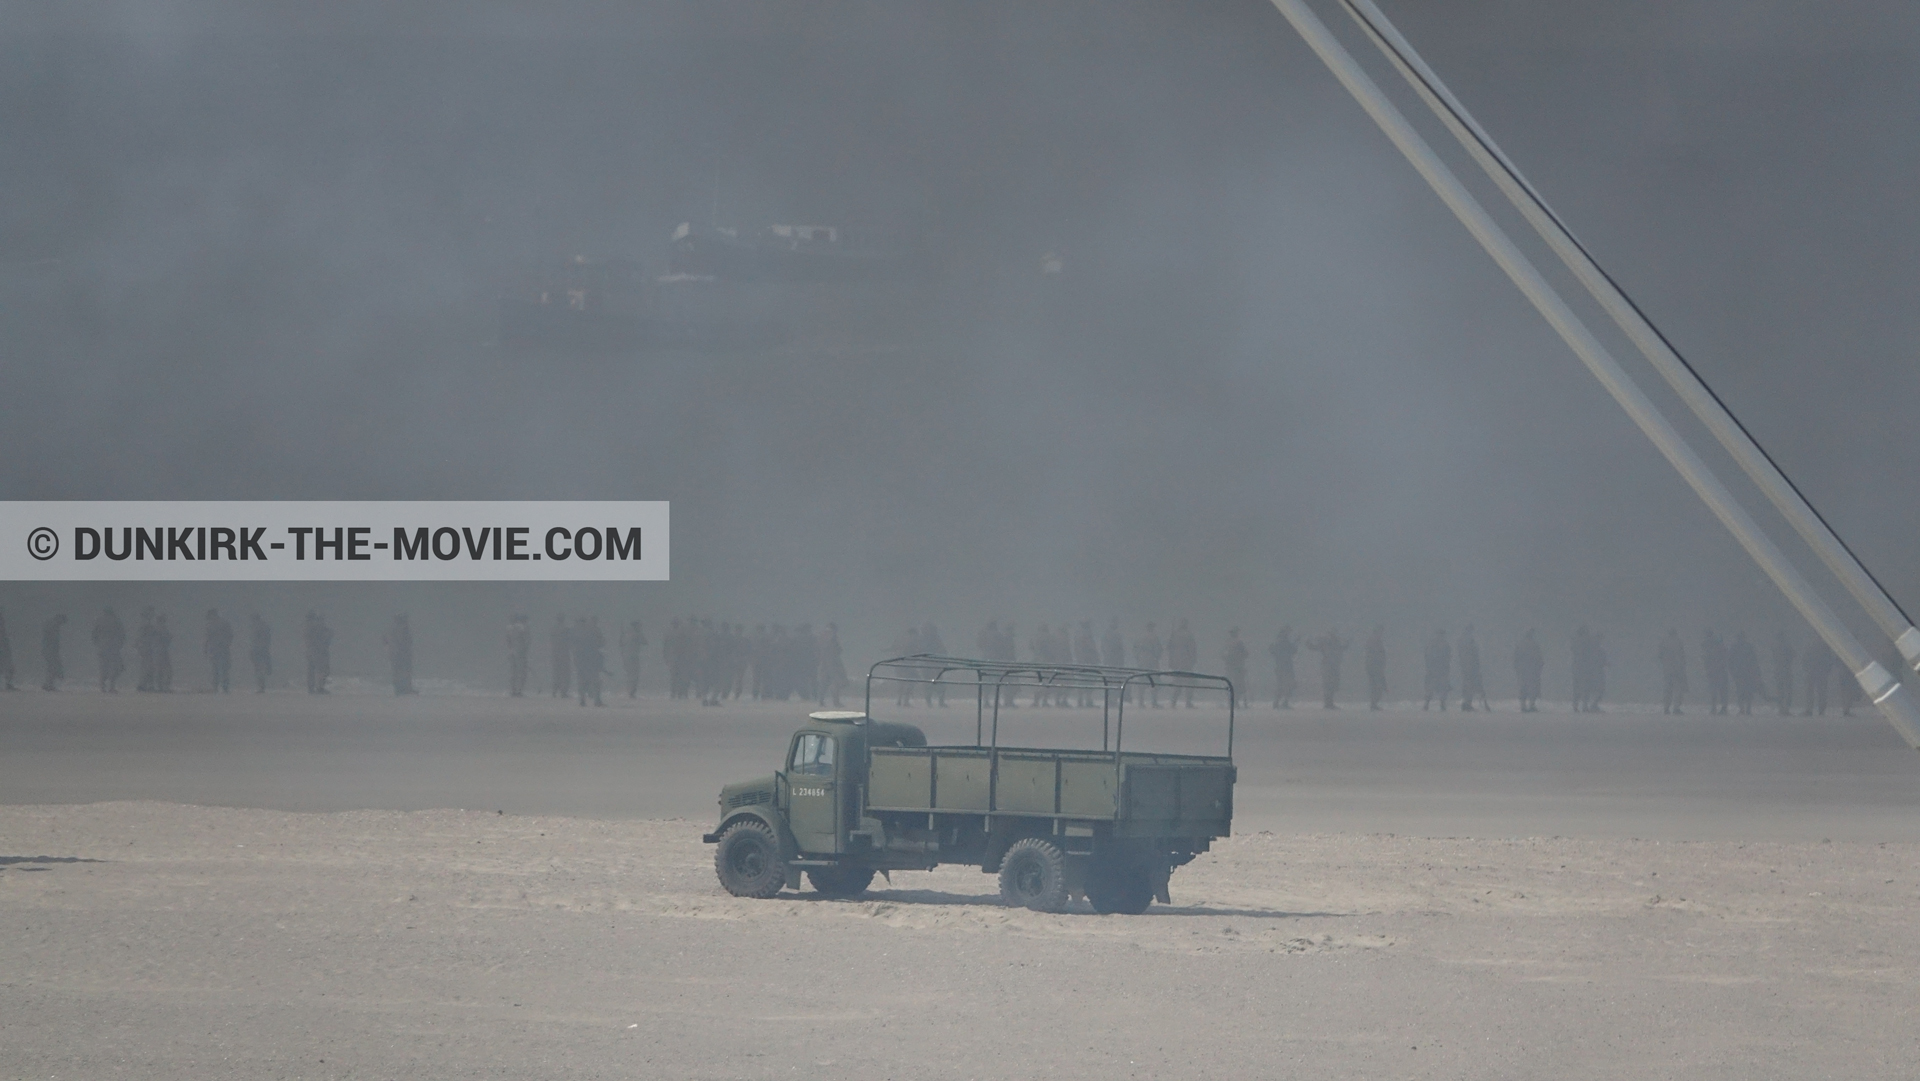 Fotos con humo negro, playa,  durante el rodaje de la película Dunkerque de Nolan